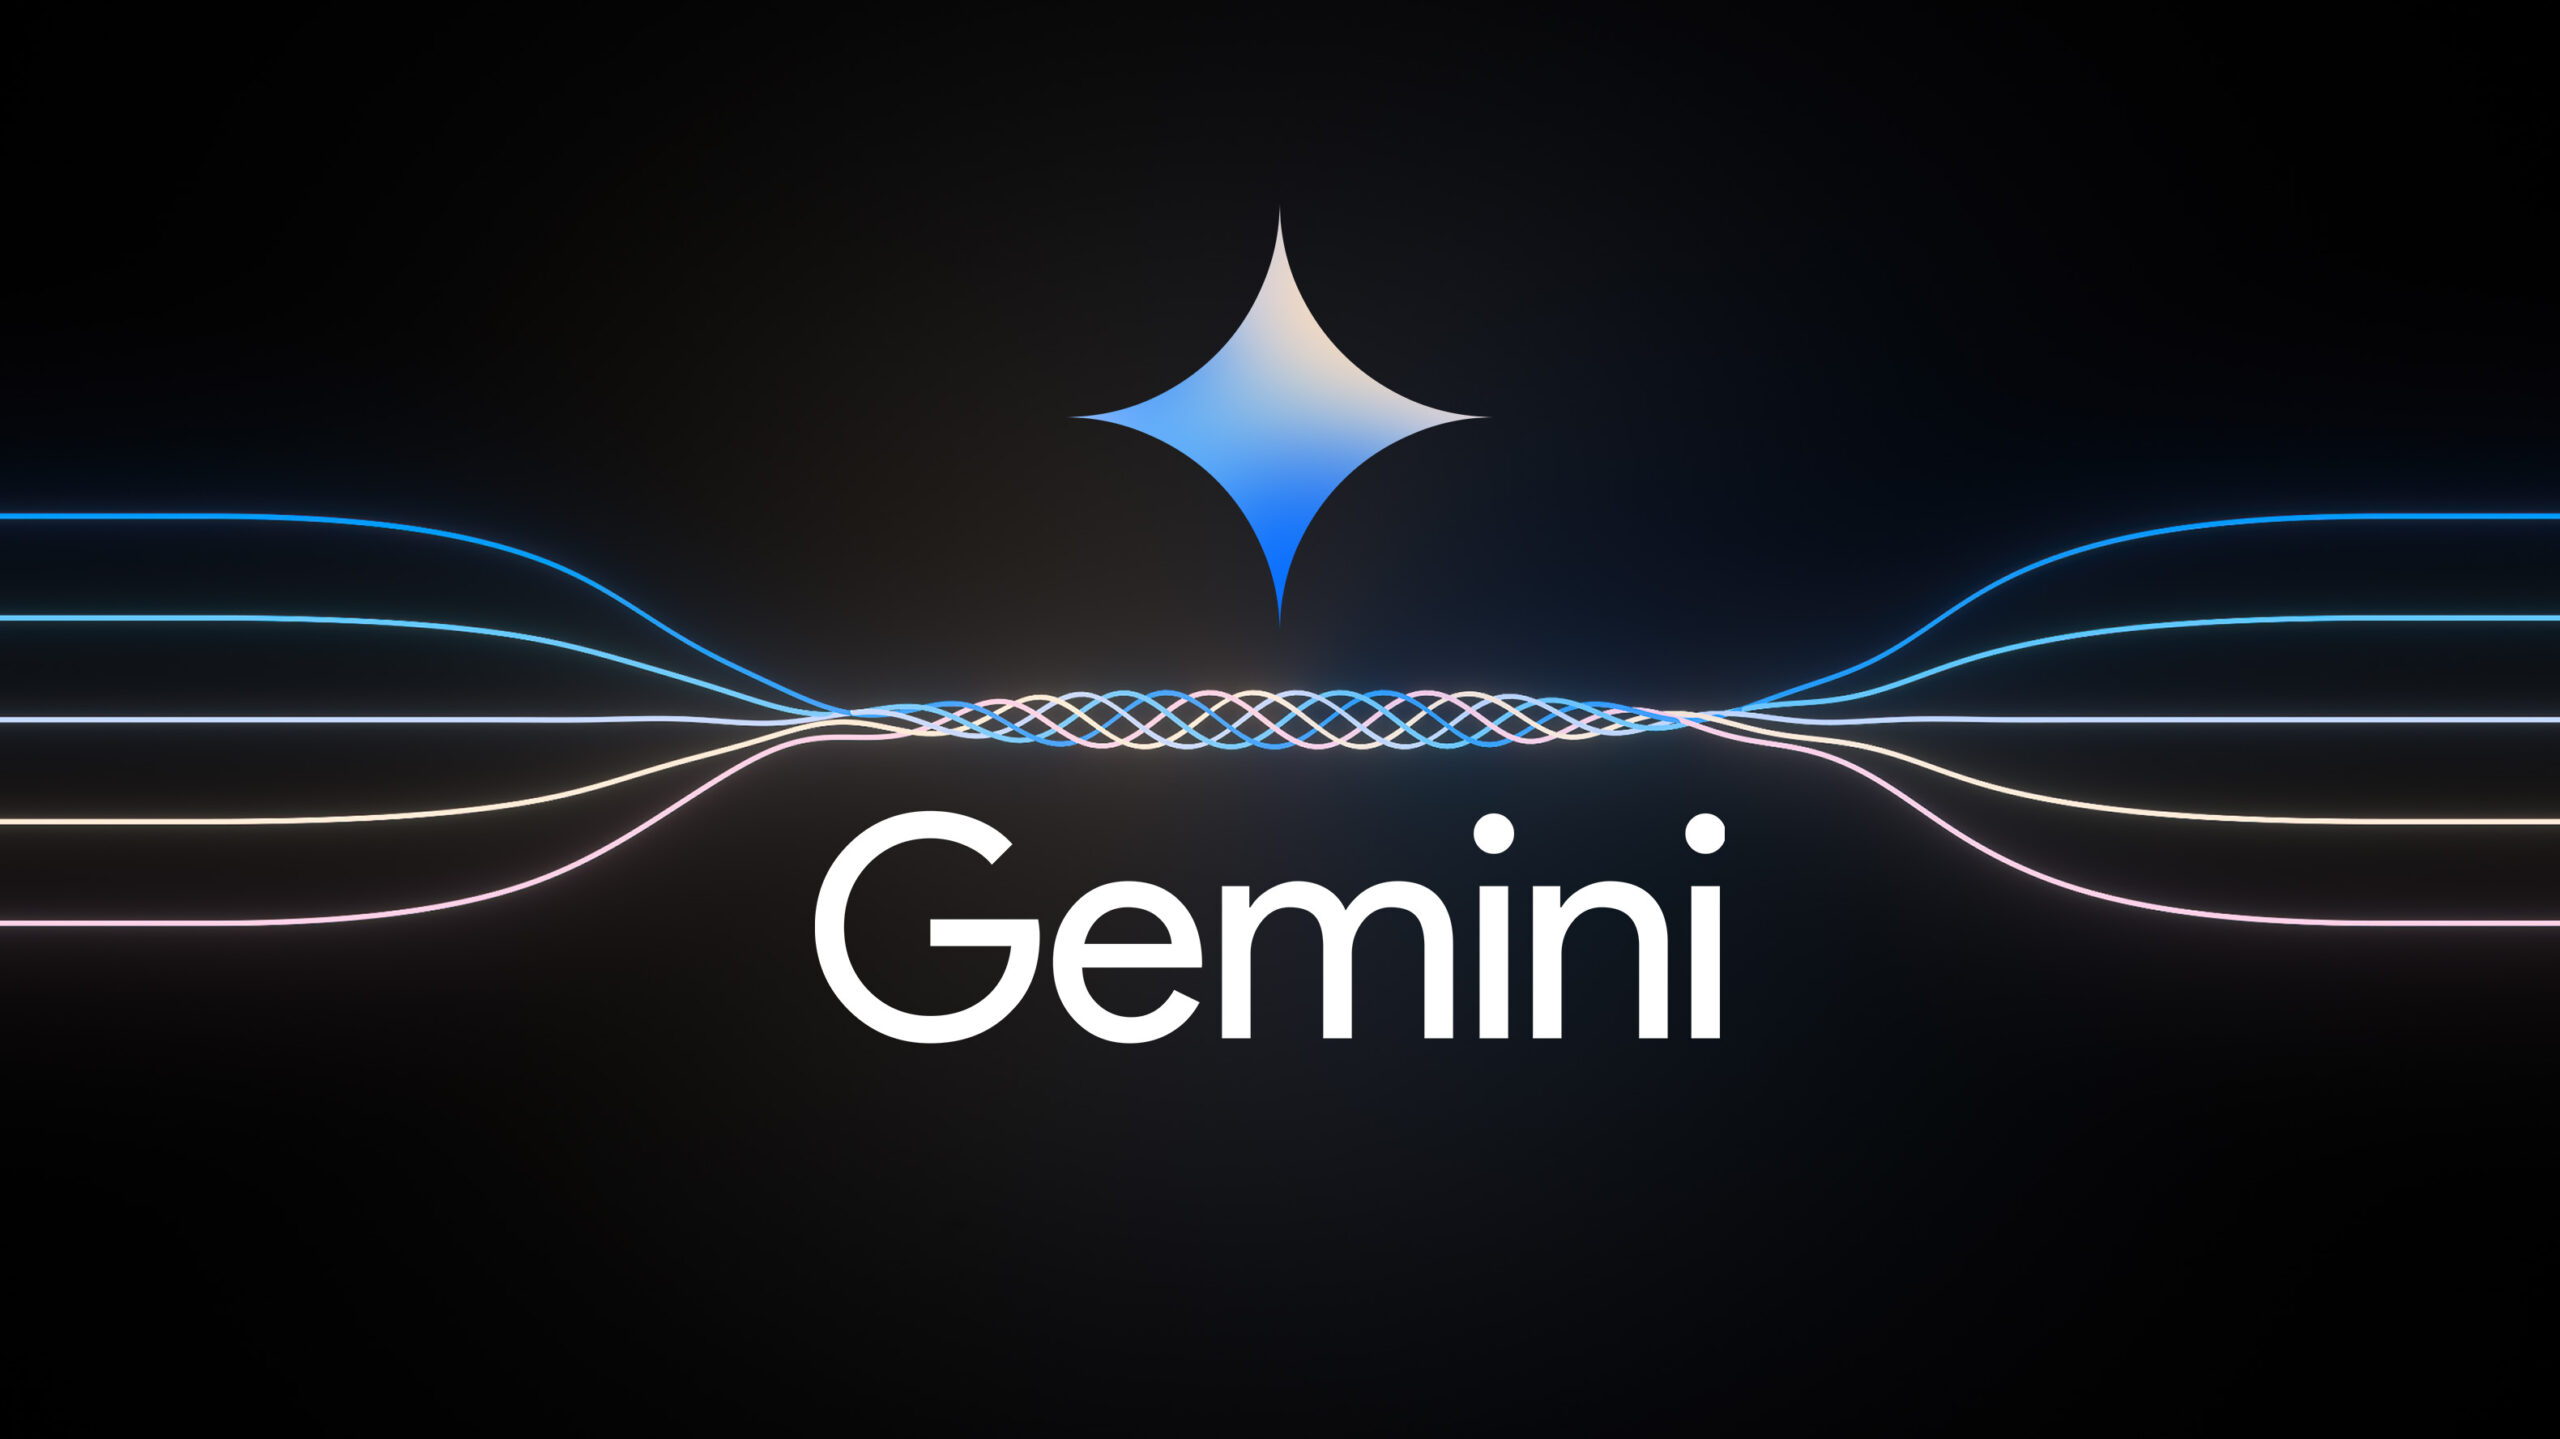 구글 Gemini 전격 발표 및 소개: 가장 크고 가장 유능한 AI 모델